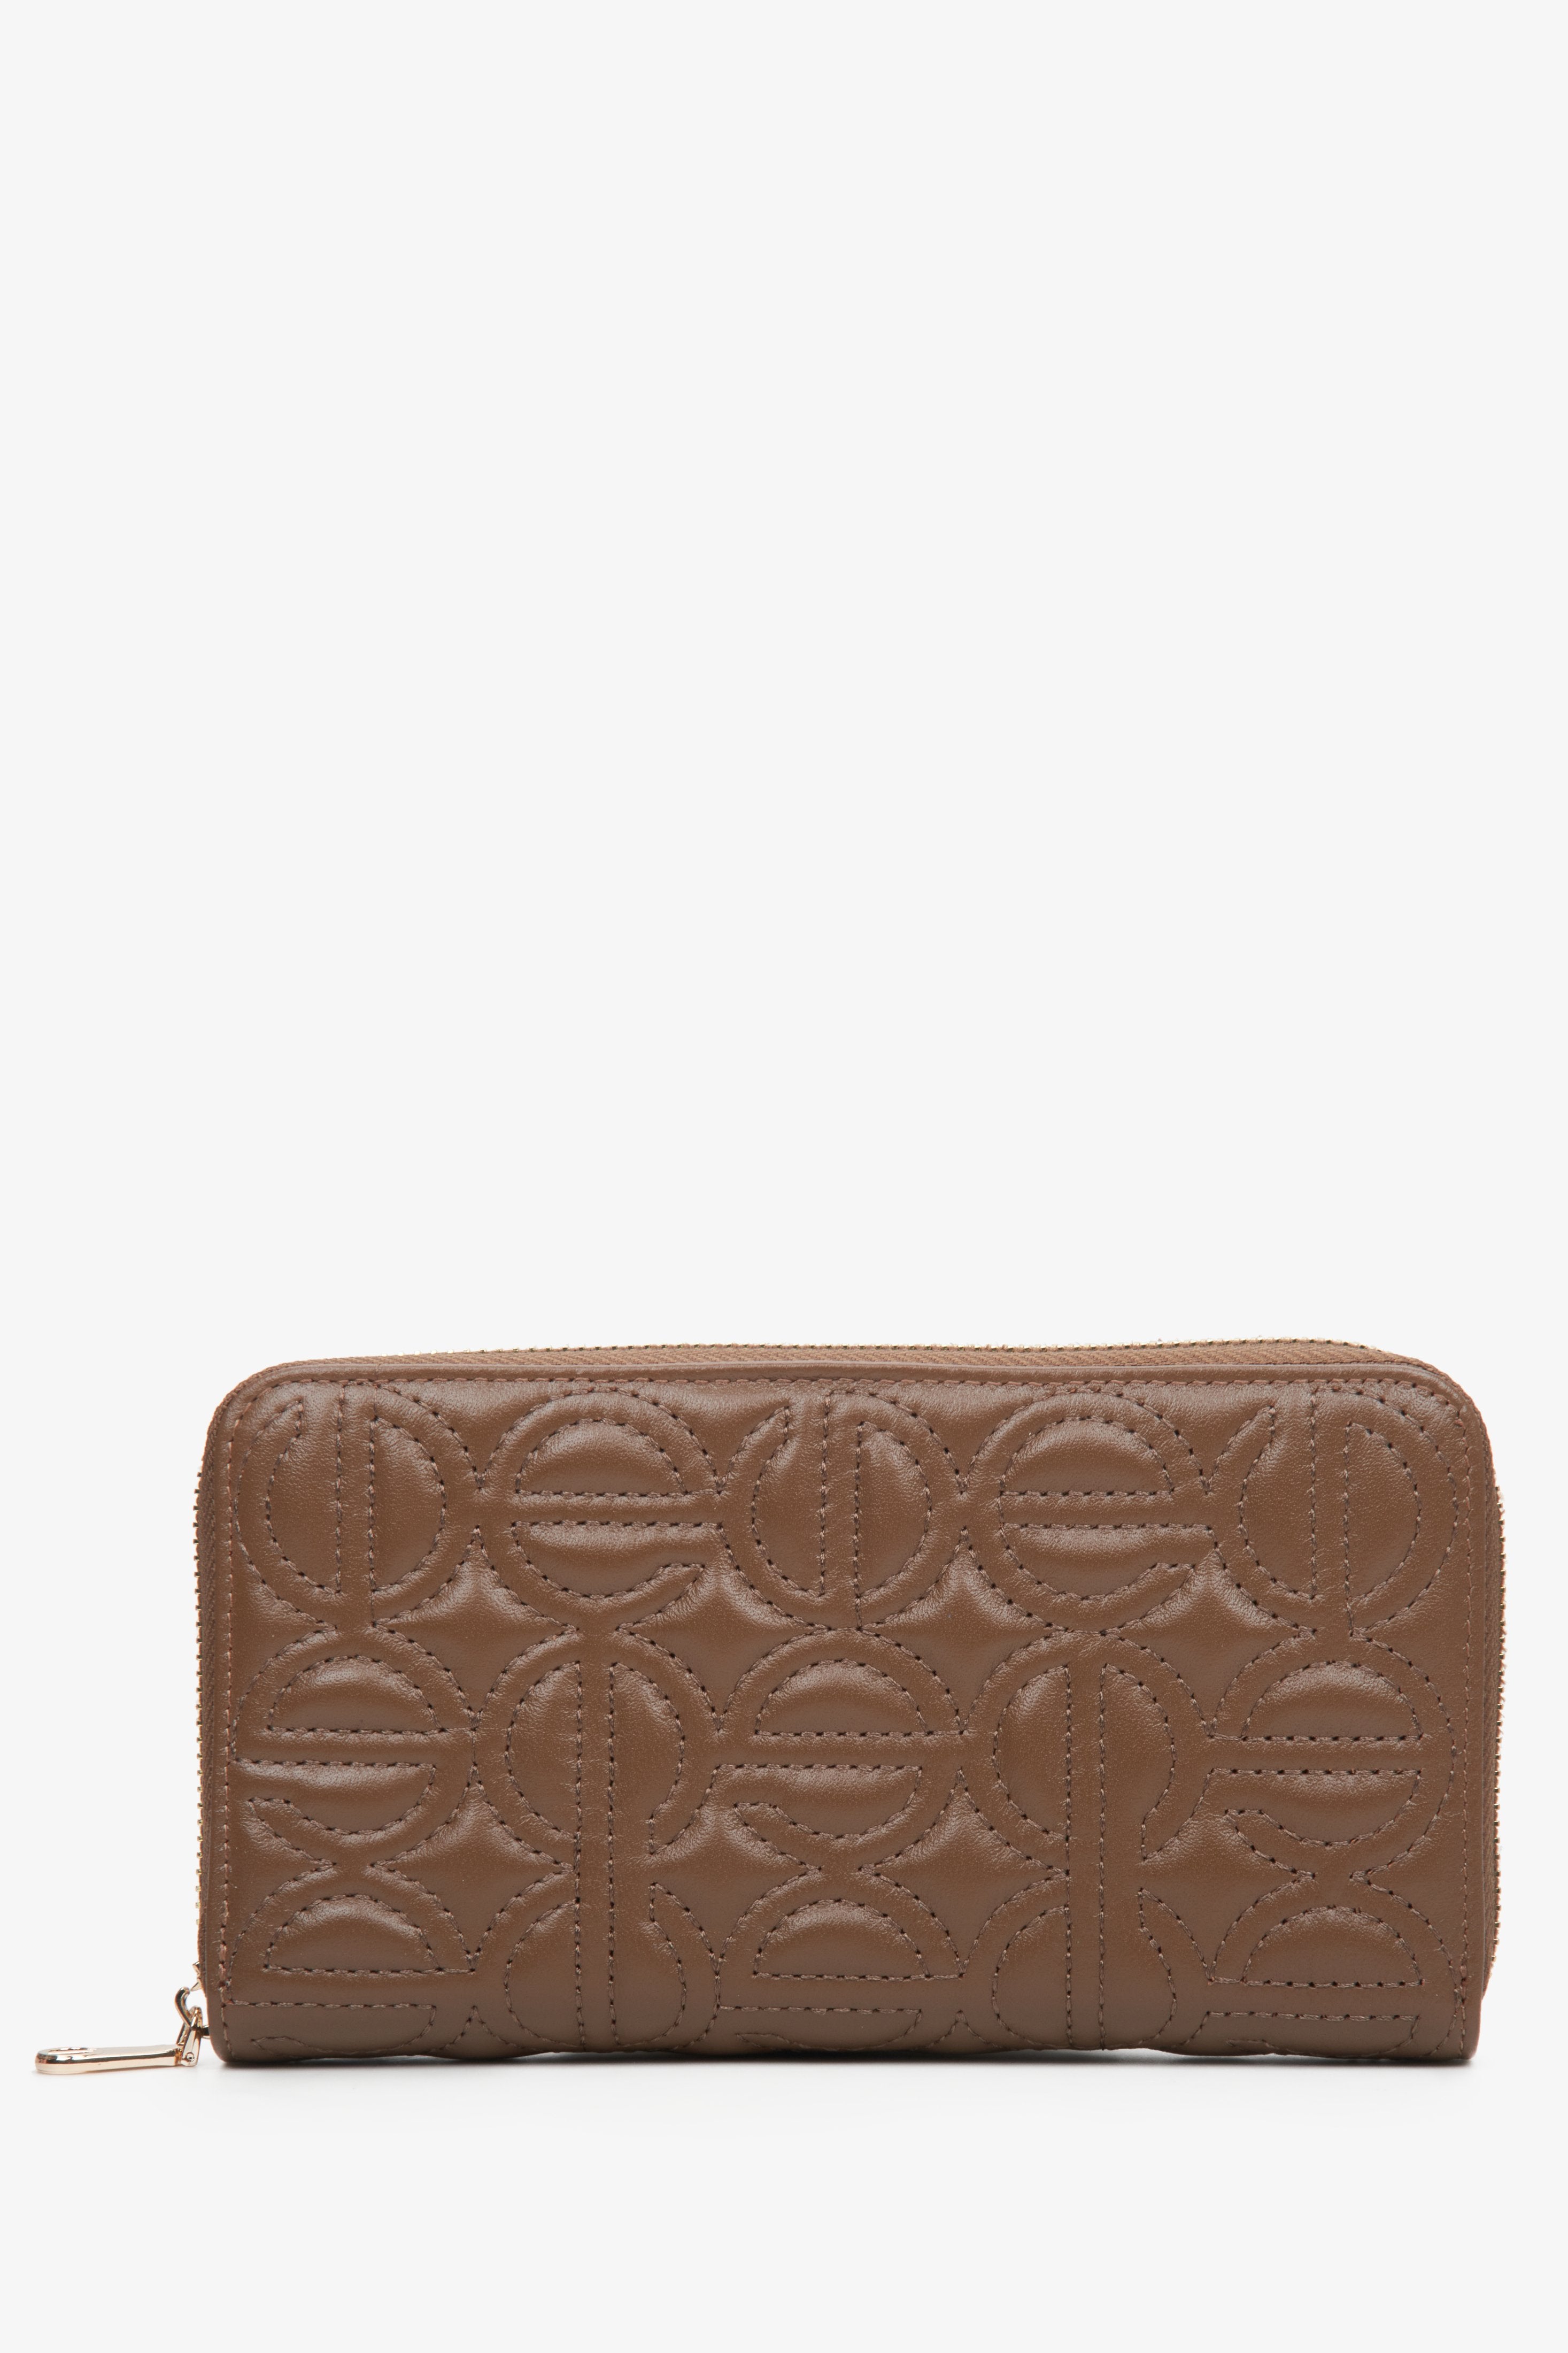 Duży, ciemnobrązowy portfel damski z suwakiem marki Estro.